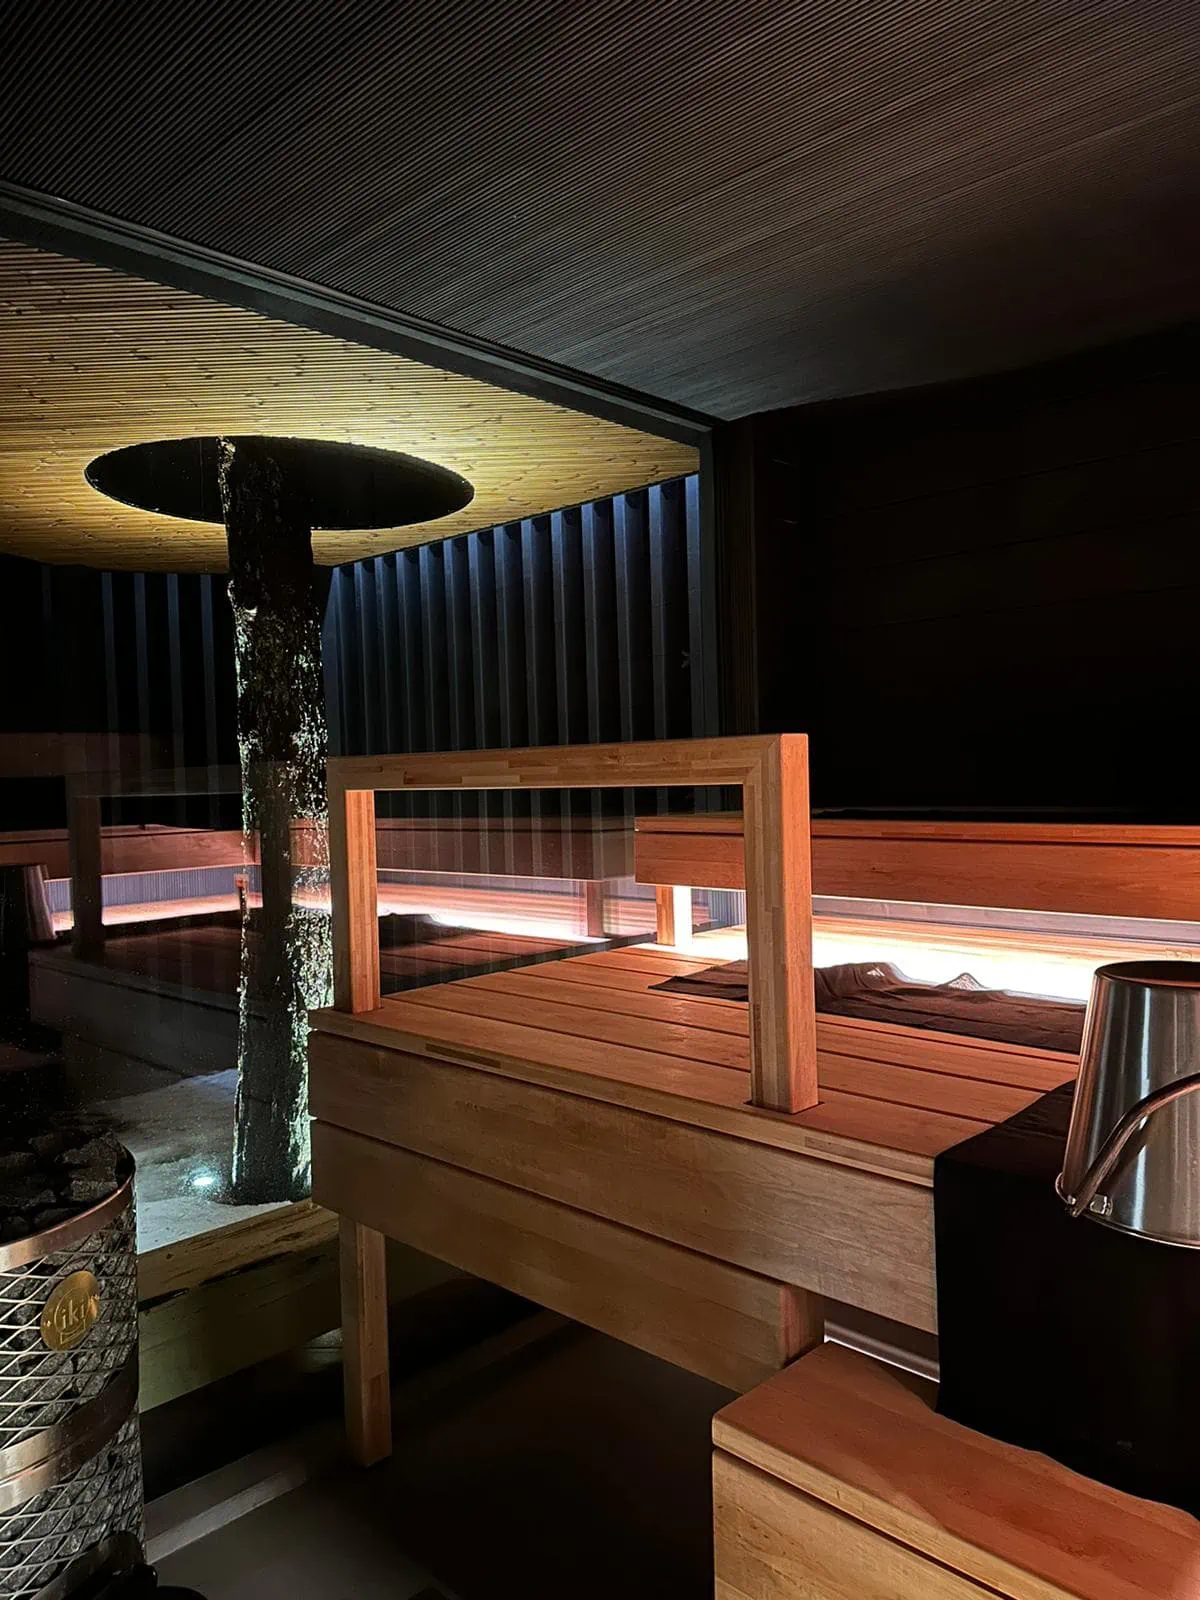 Sähkövirta Boström toteutti tämän upean ja modernin saunan sähköistykset